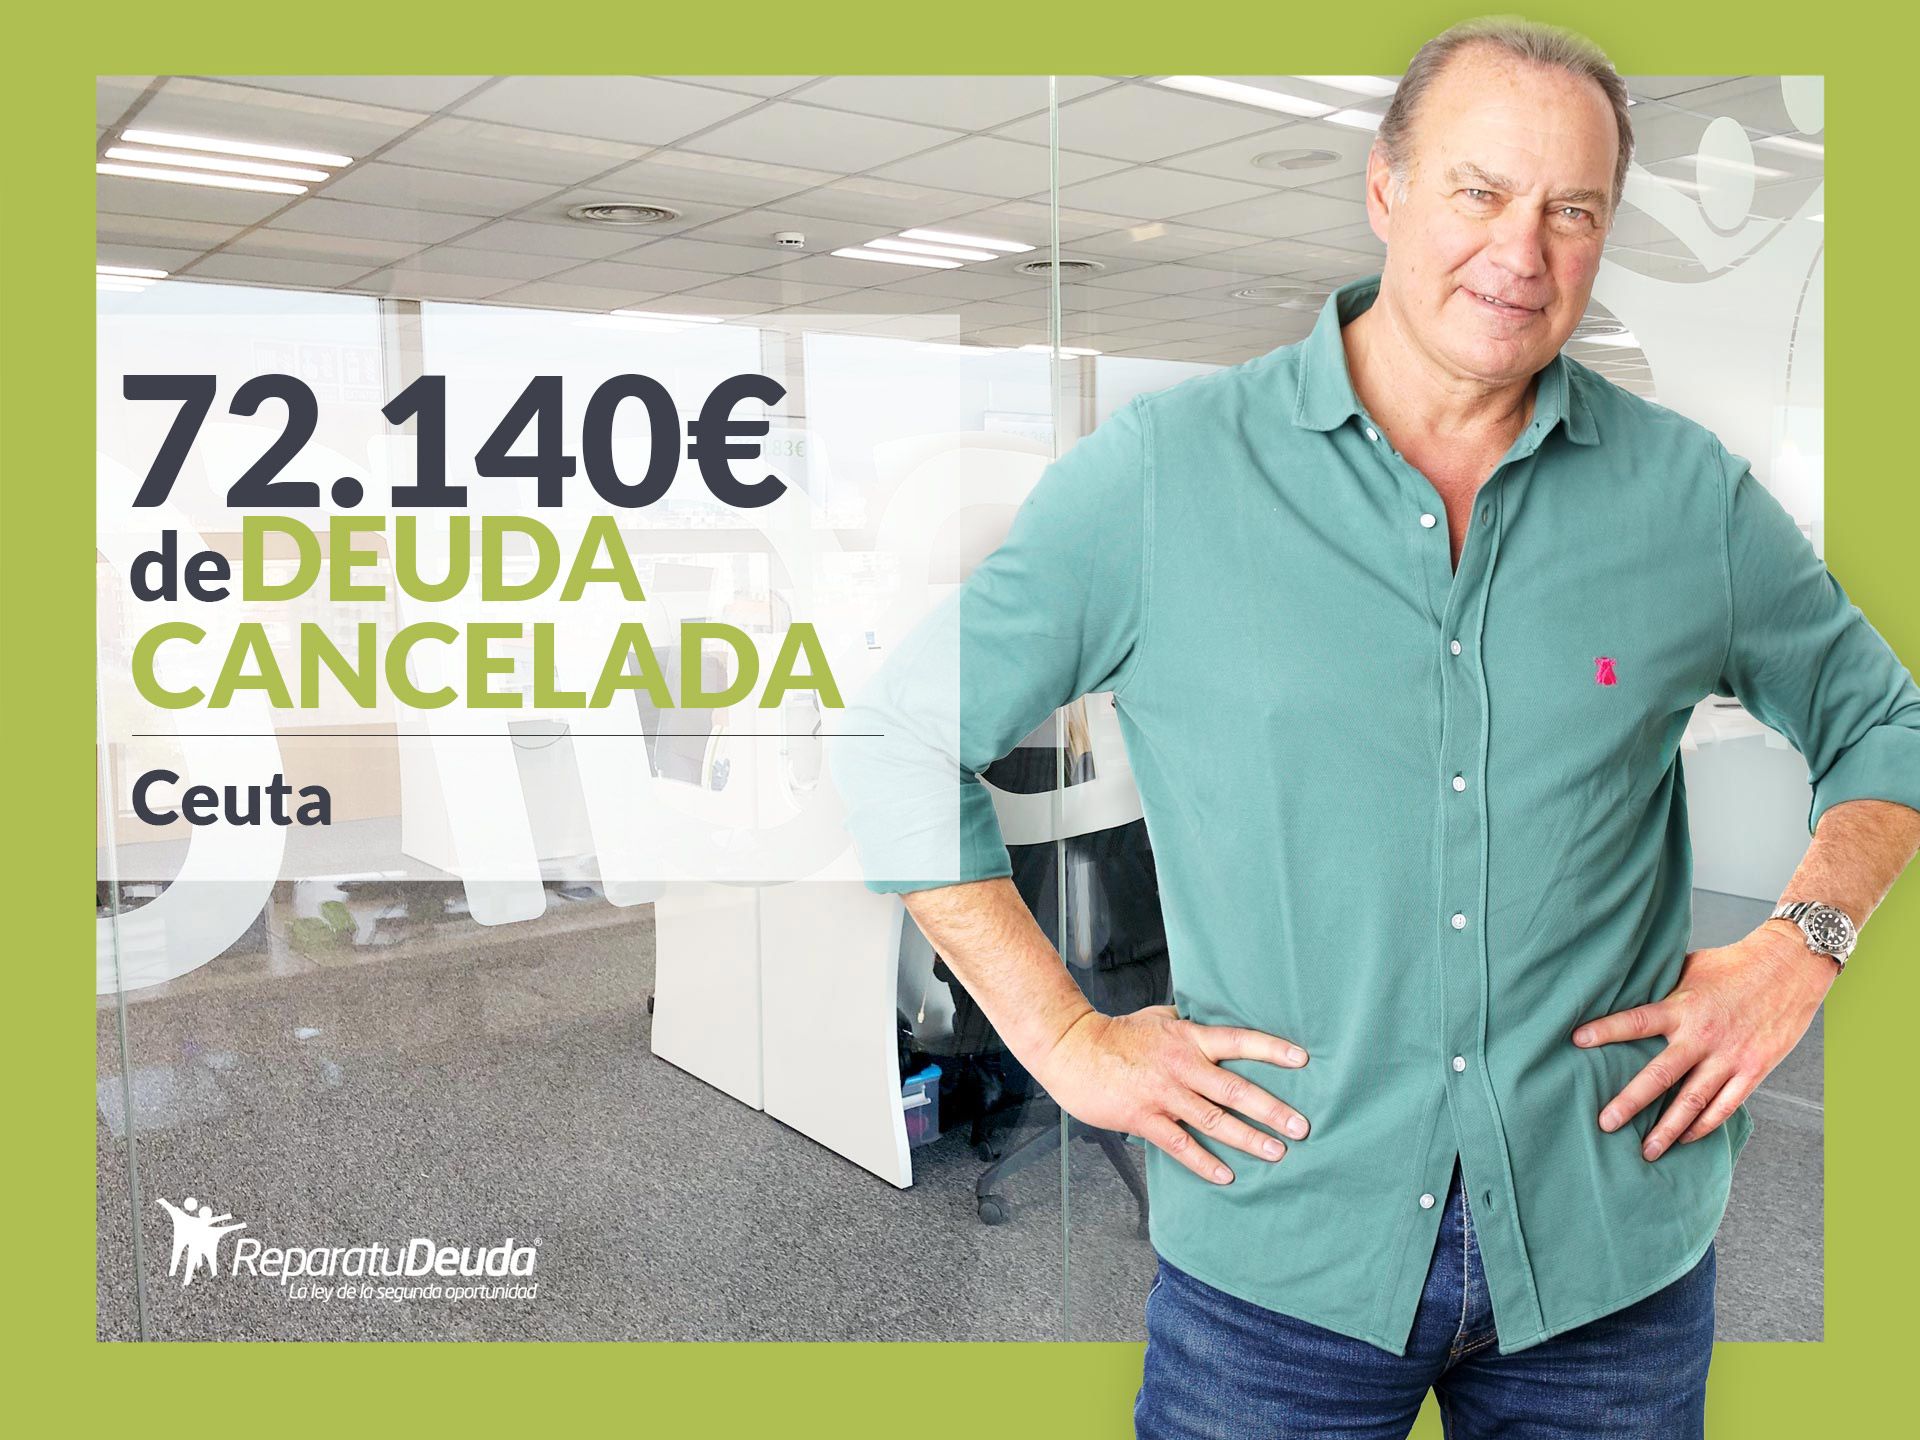 Repara tu Deuda abogados cancela 72.140? en Ceuta con la Ley de Segunda Oportunidad